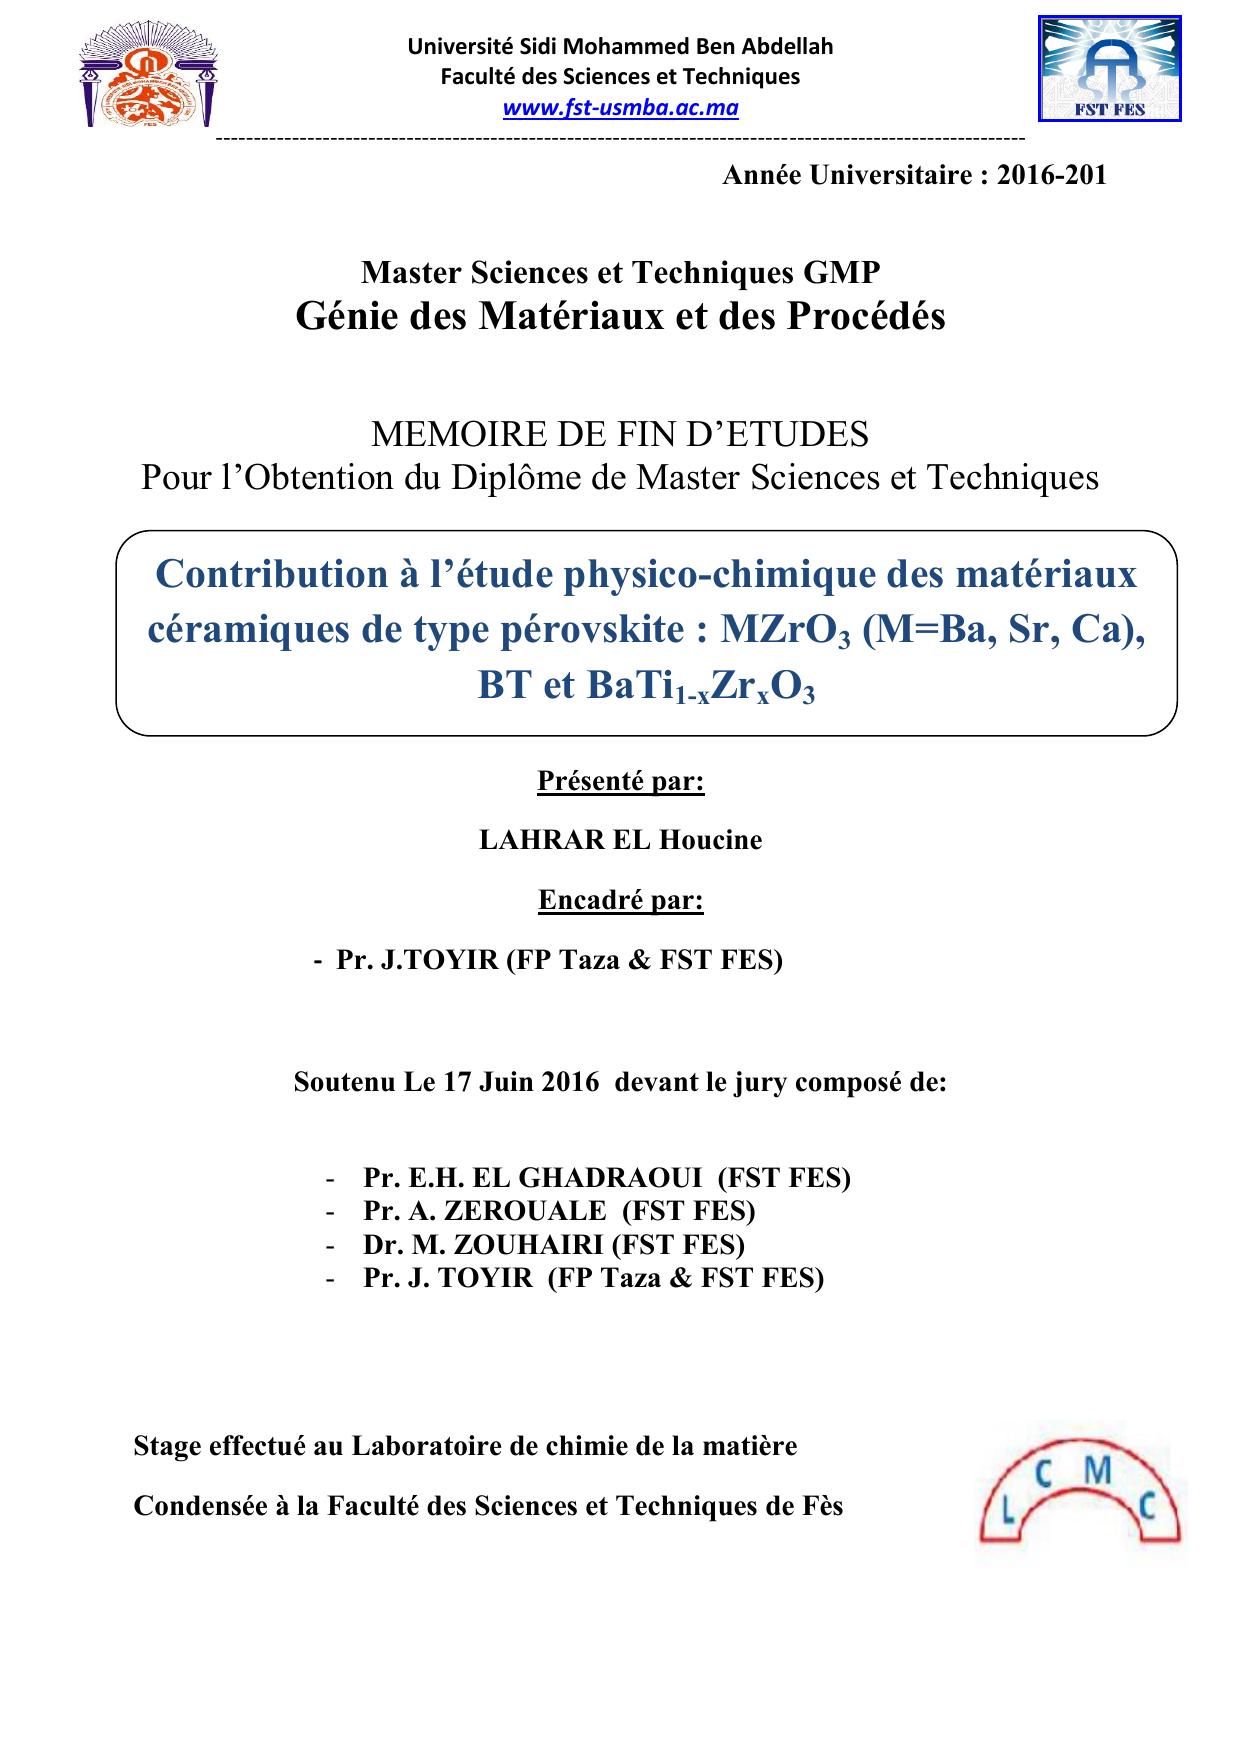 Contribution à l’étude physico-chimique des matériaux céramiques de type pérovskite : MZrO3 (M=Ba, Sr, Ca), BT et BaTi1-xZrxO3